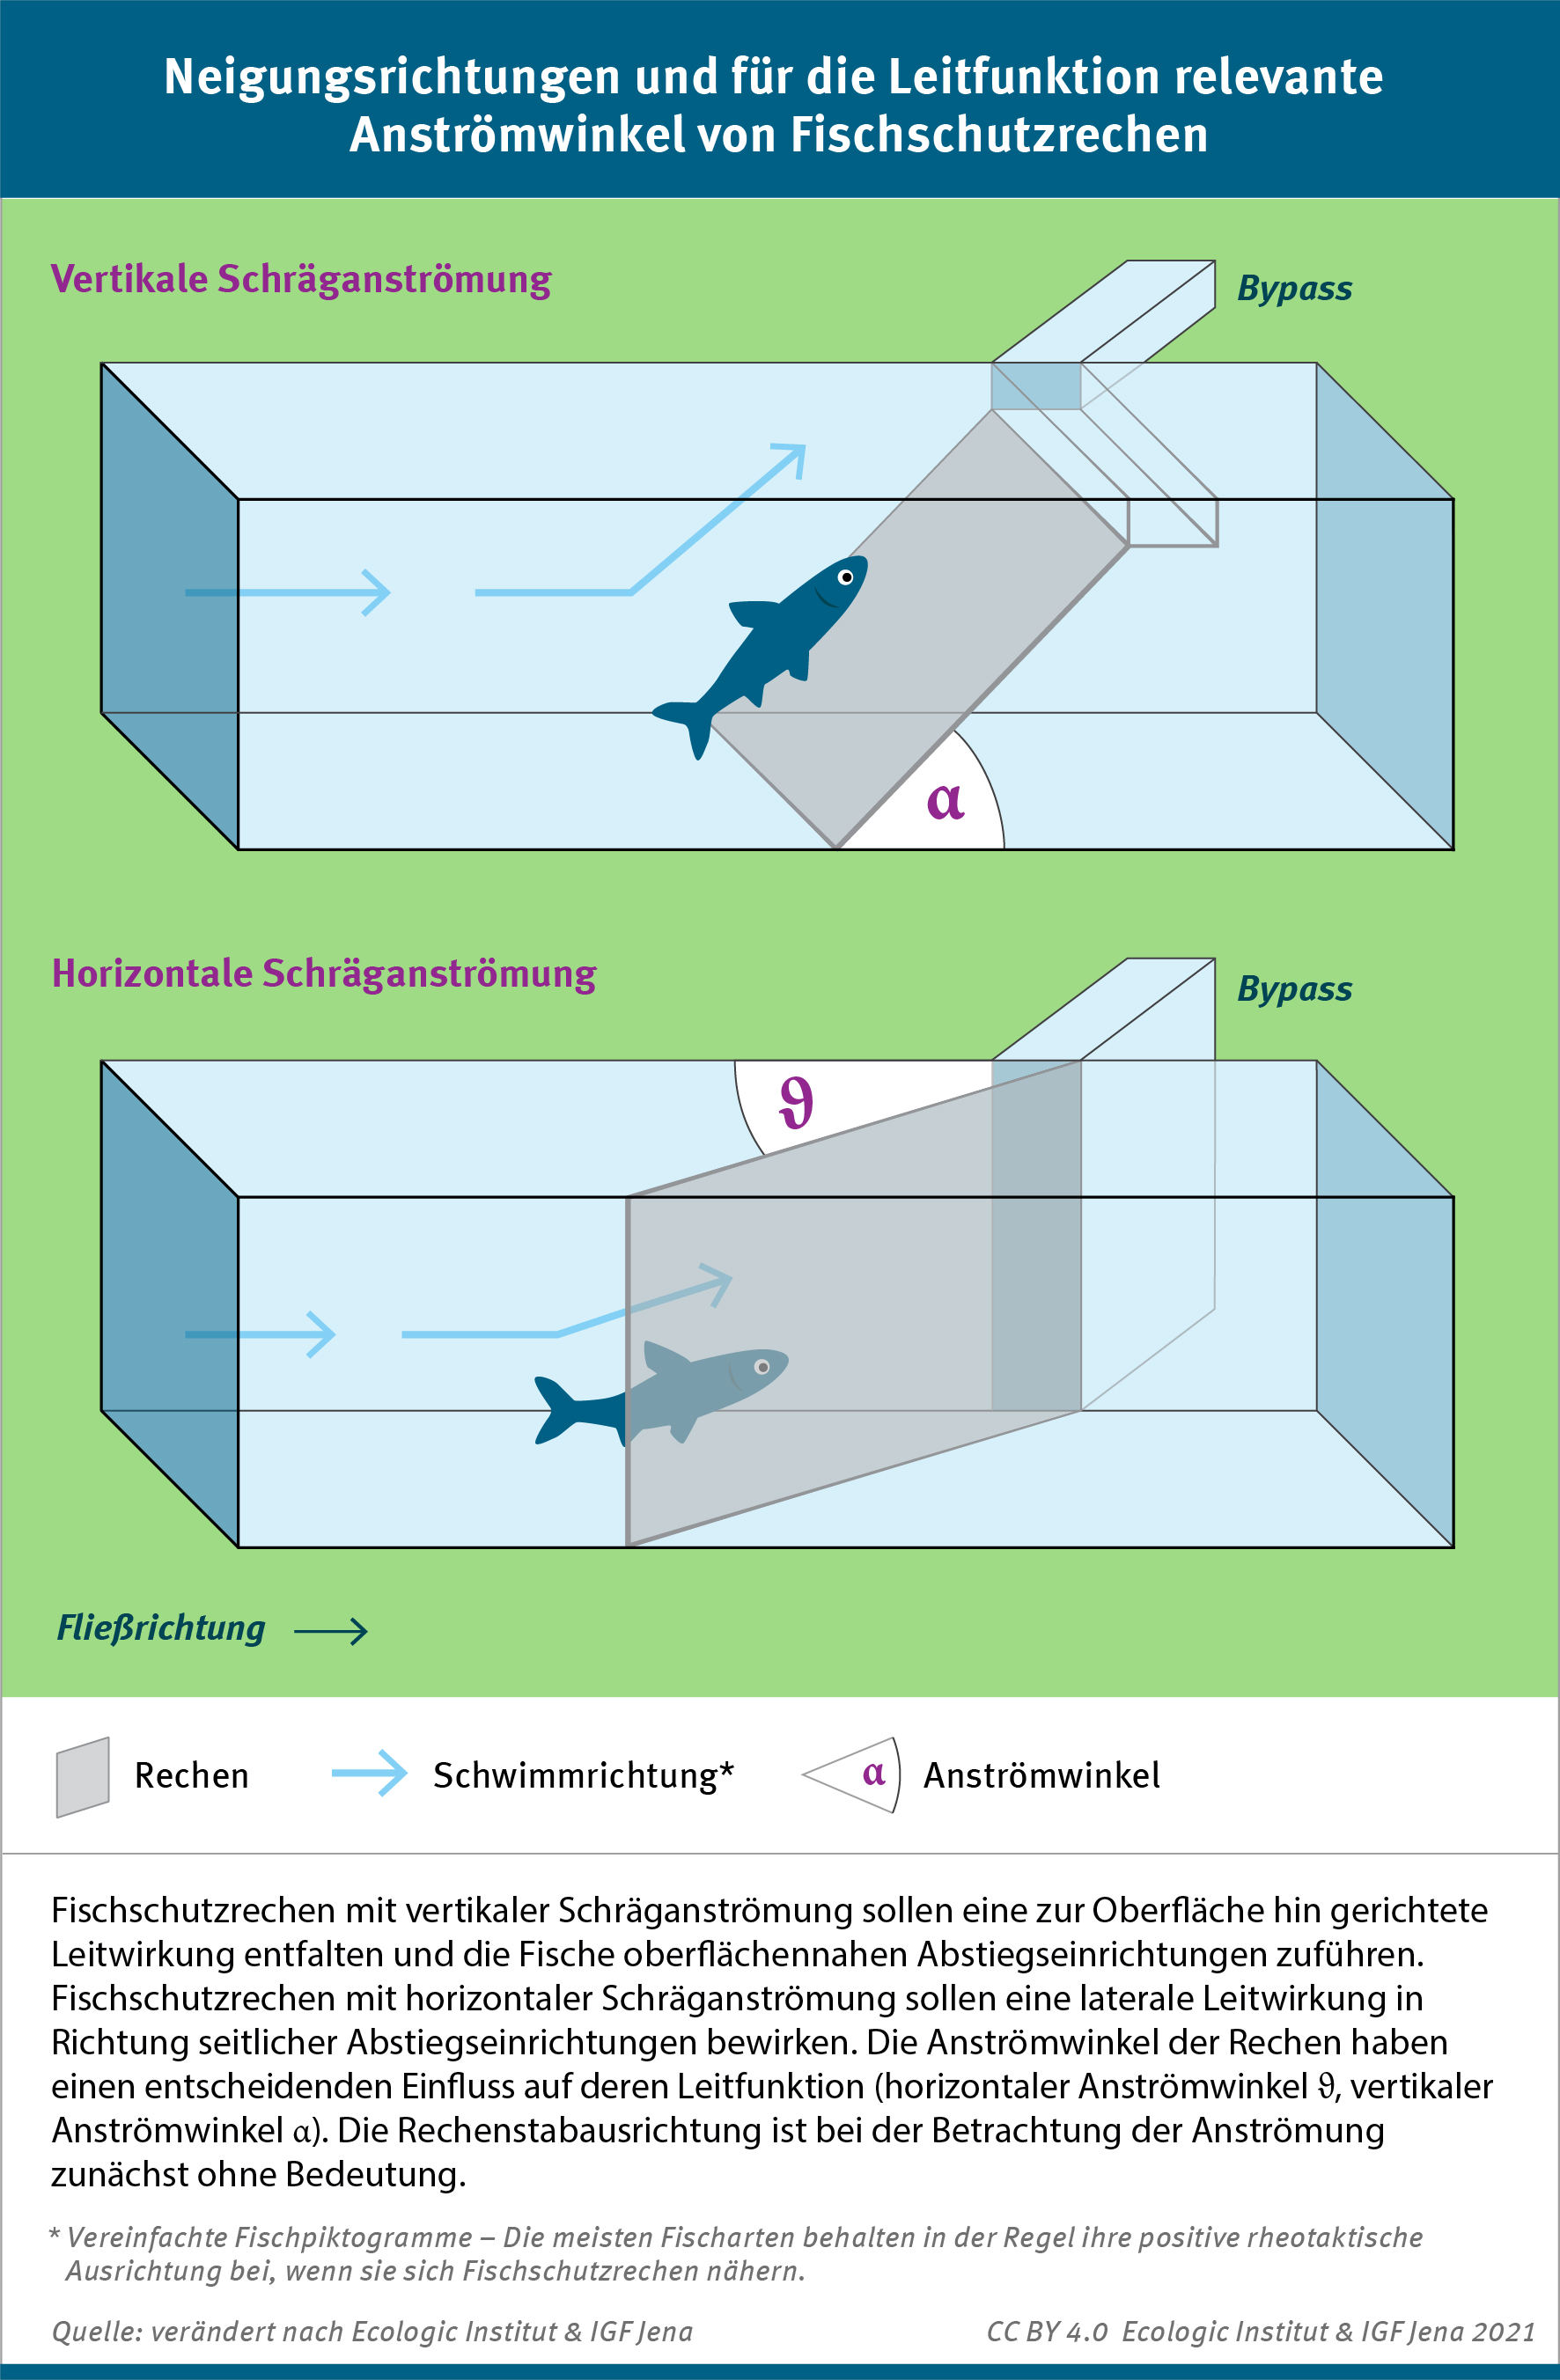 Die INfografik zeigt die Unterschiede zwischen horizontaler und vertikaler Schräganströmung an Fischschutzrechen